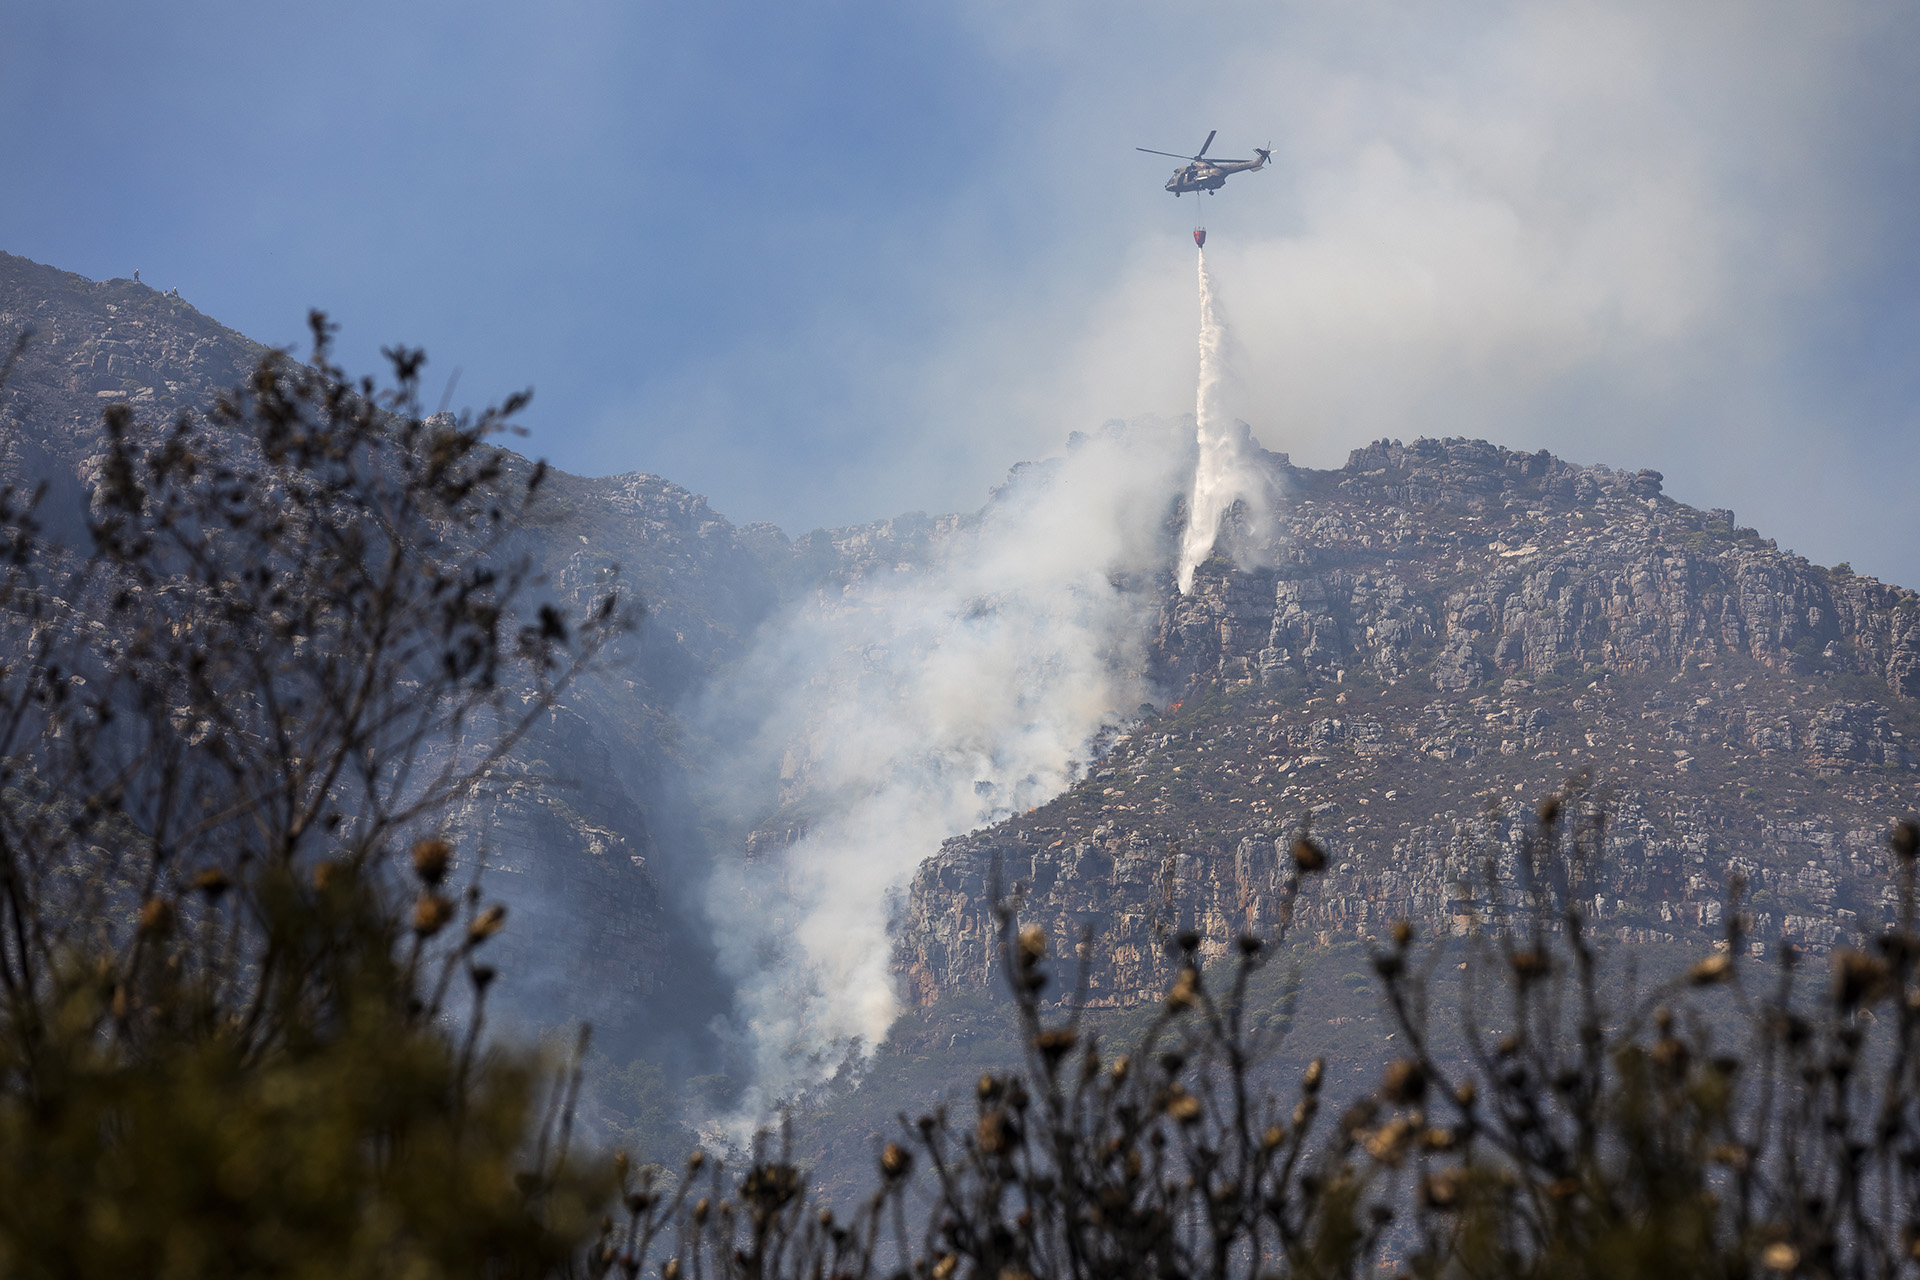 Már legalább 130 hektárnyi terület égett el a péntek esti horvát erdőtűzben - Videó